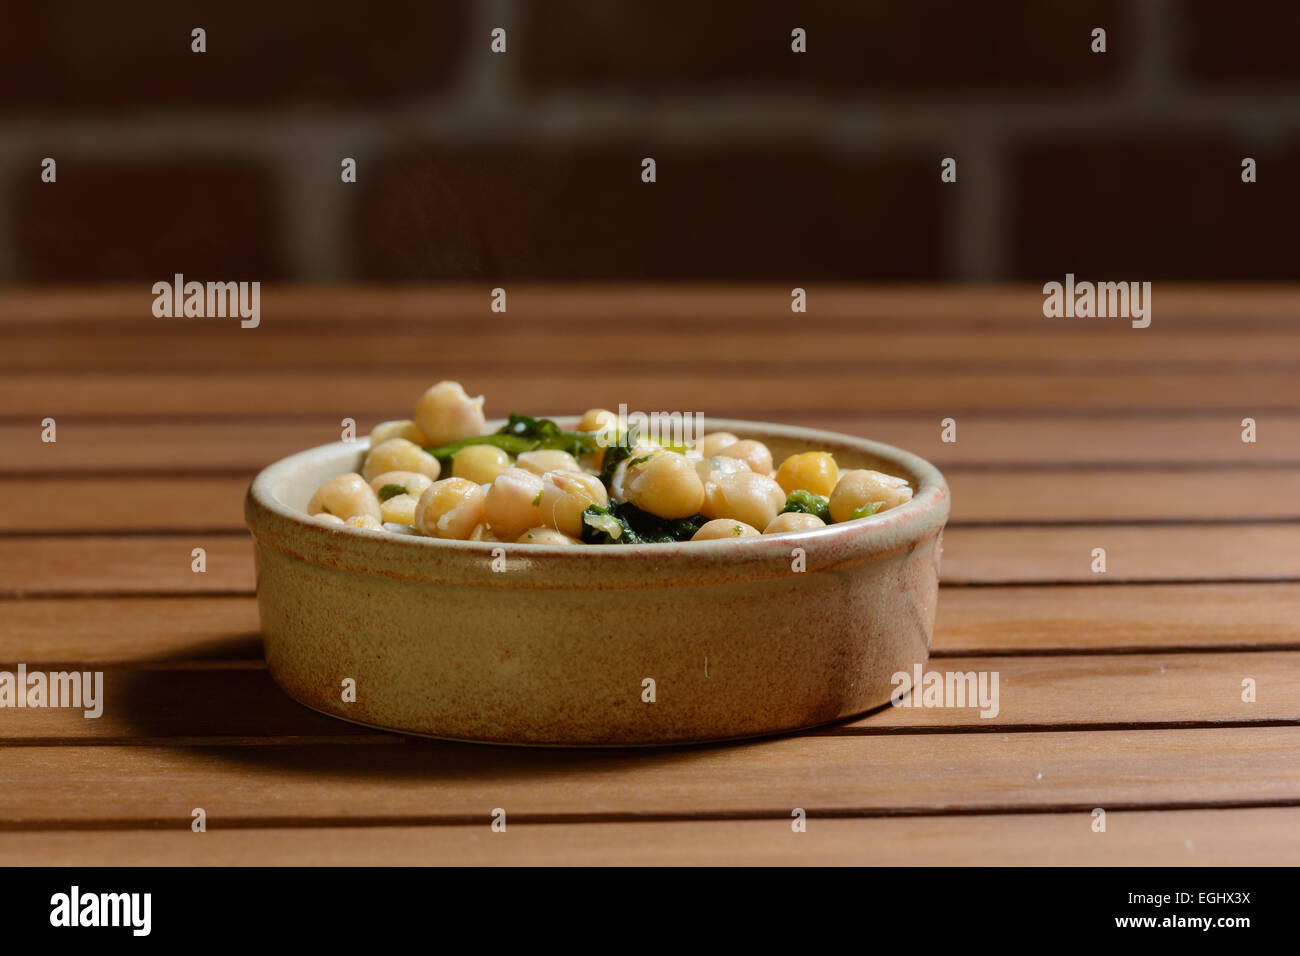 Des tapas. Les épinards et pois chiches cuits dans une sauce épicée, servi dans un bol en céramique marron sur une table en bois avec mur de brique Banque D'Images